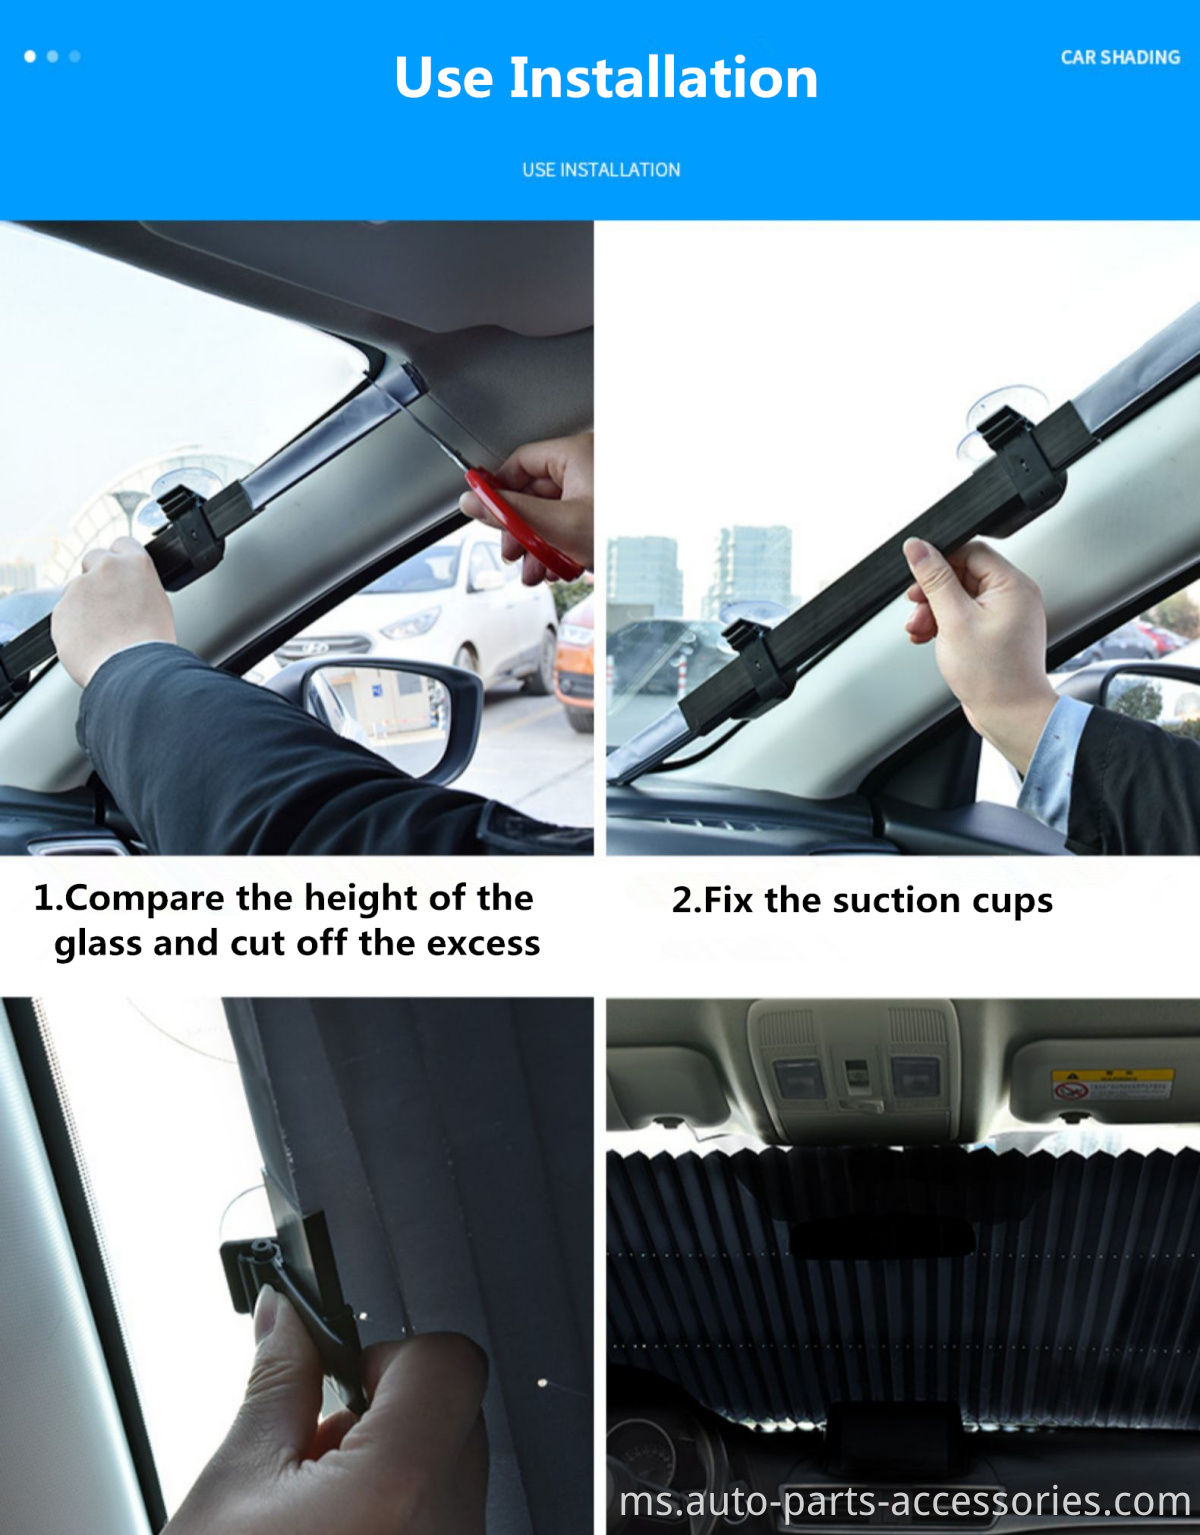 Harga borong boleh ditarik balik nilon kereta tirai depan cahaya matahari depan automatik